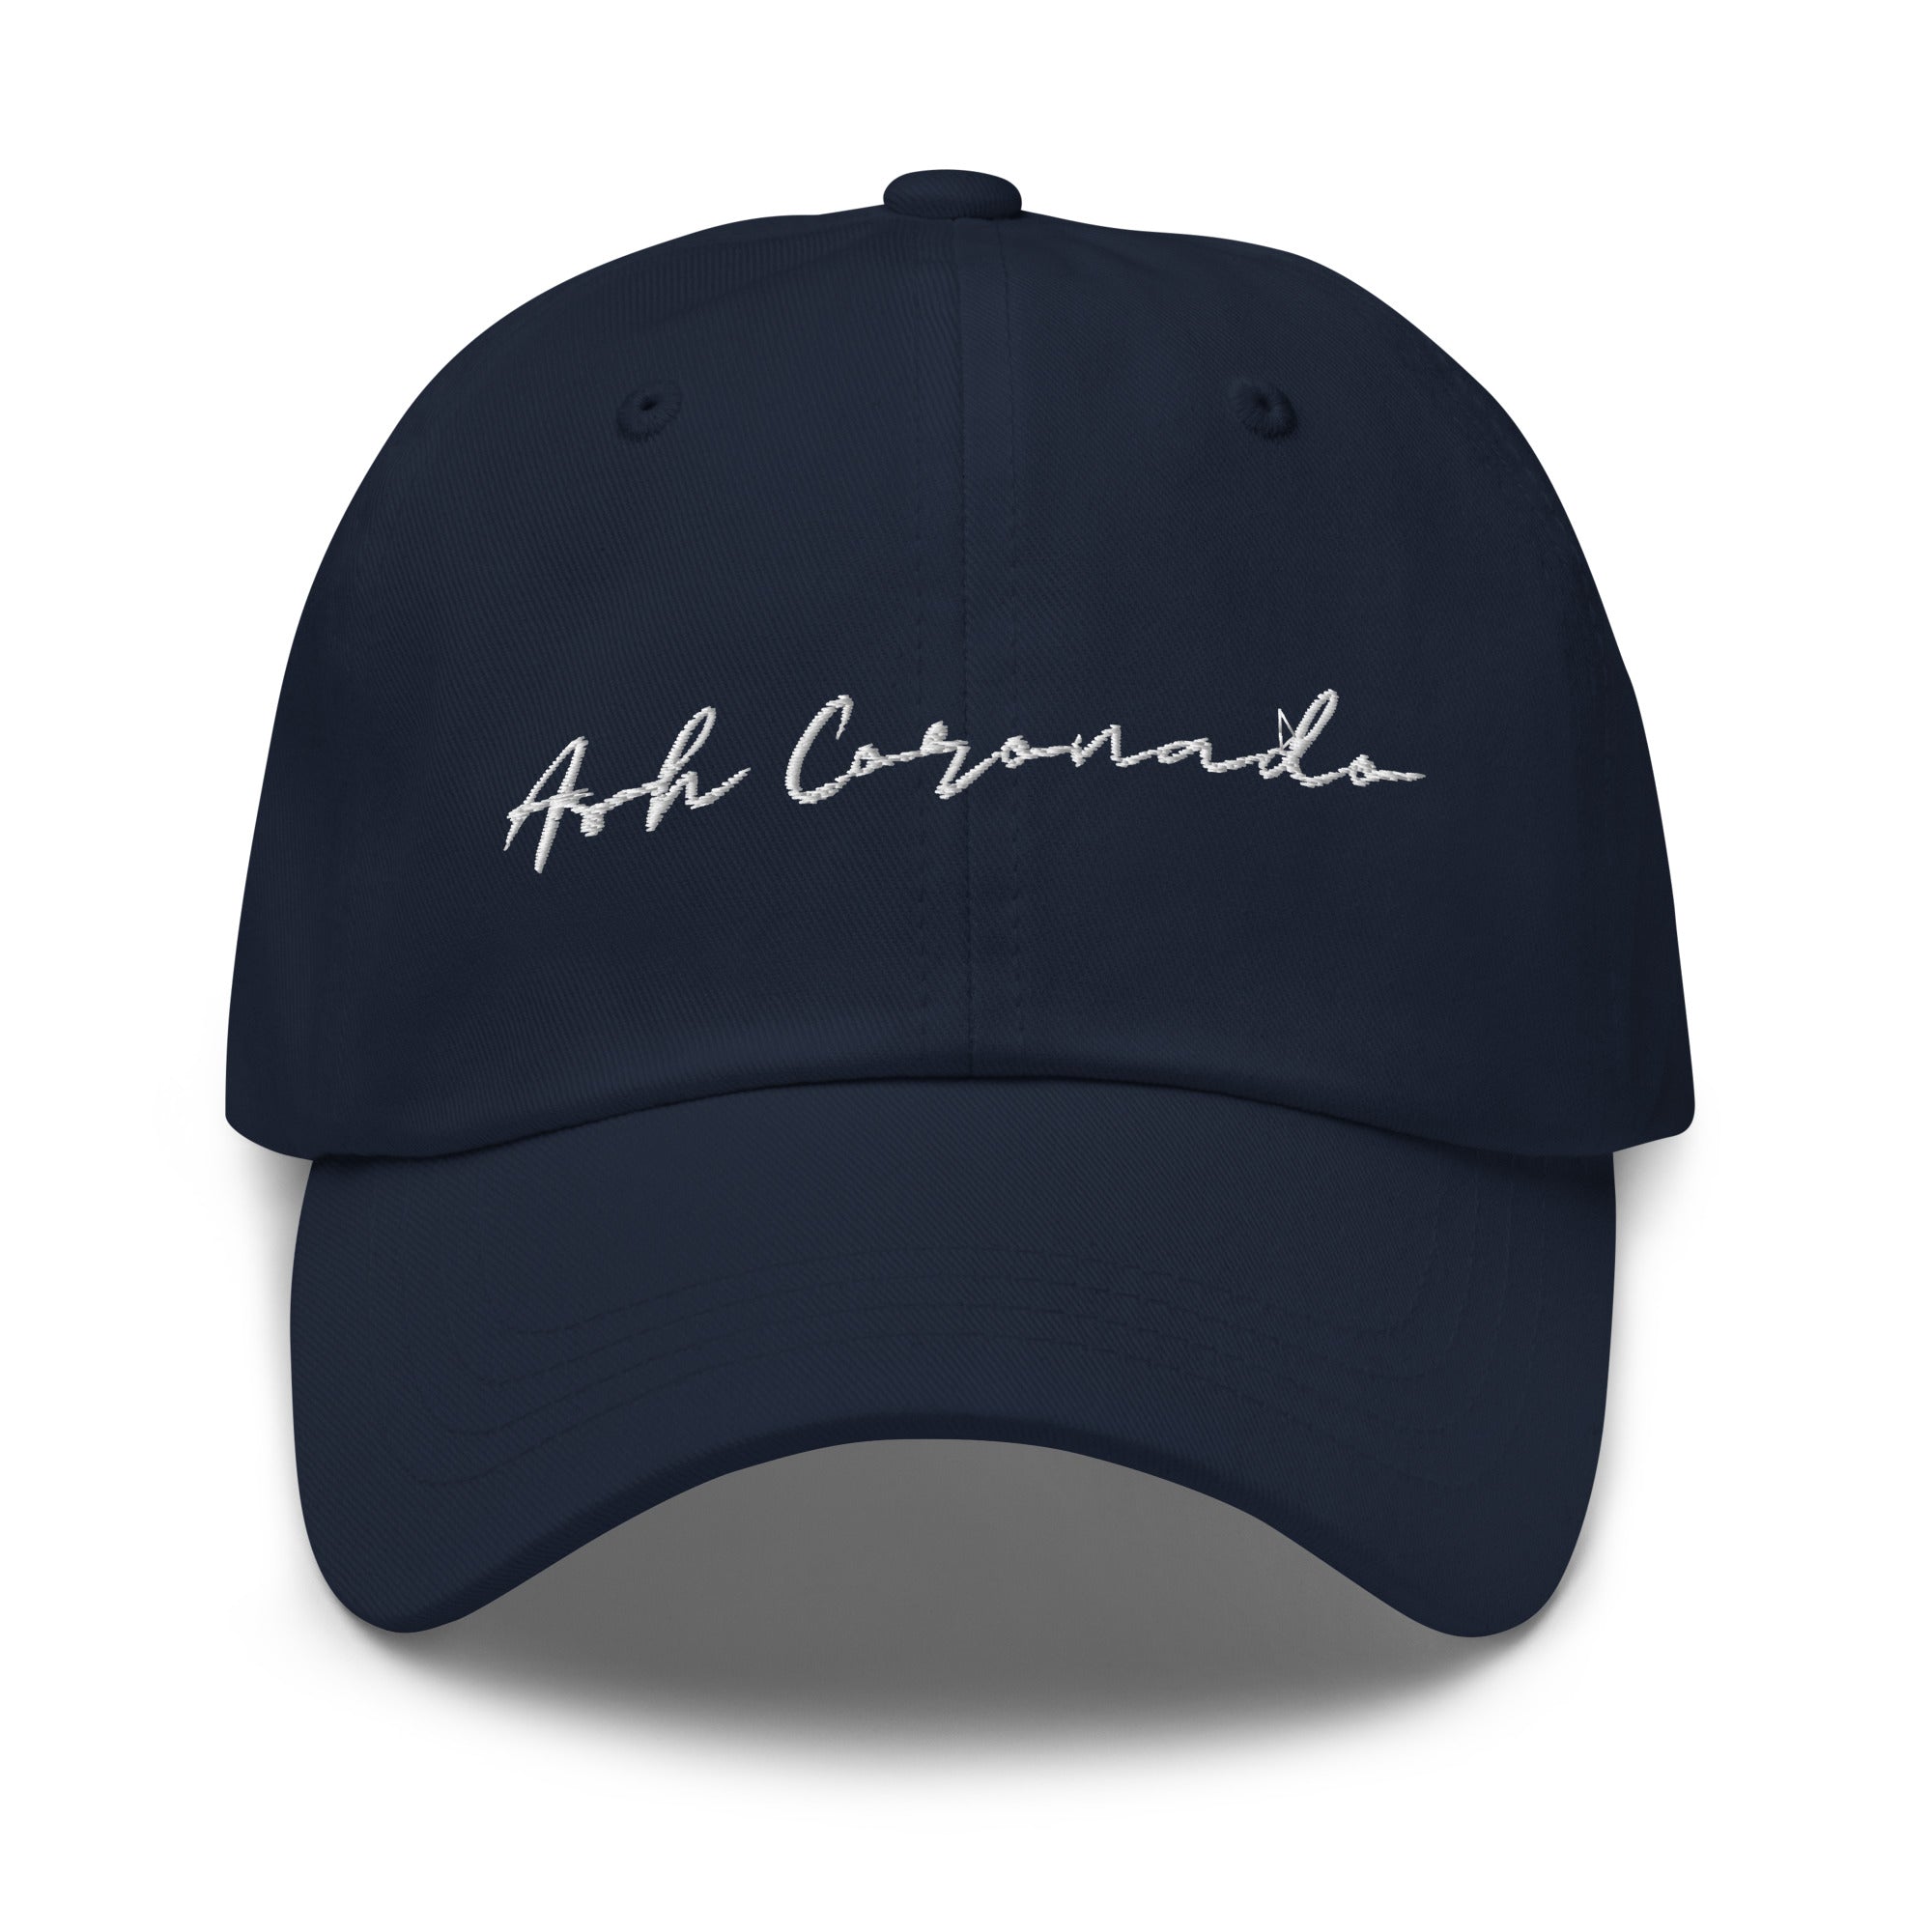 Ash Coronado - Dad hat